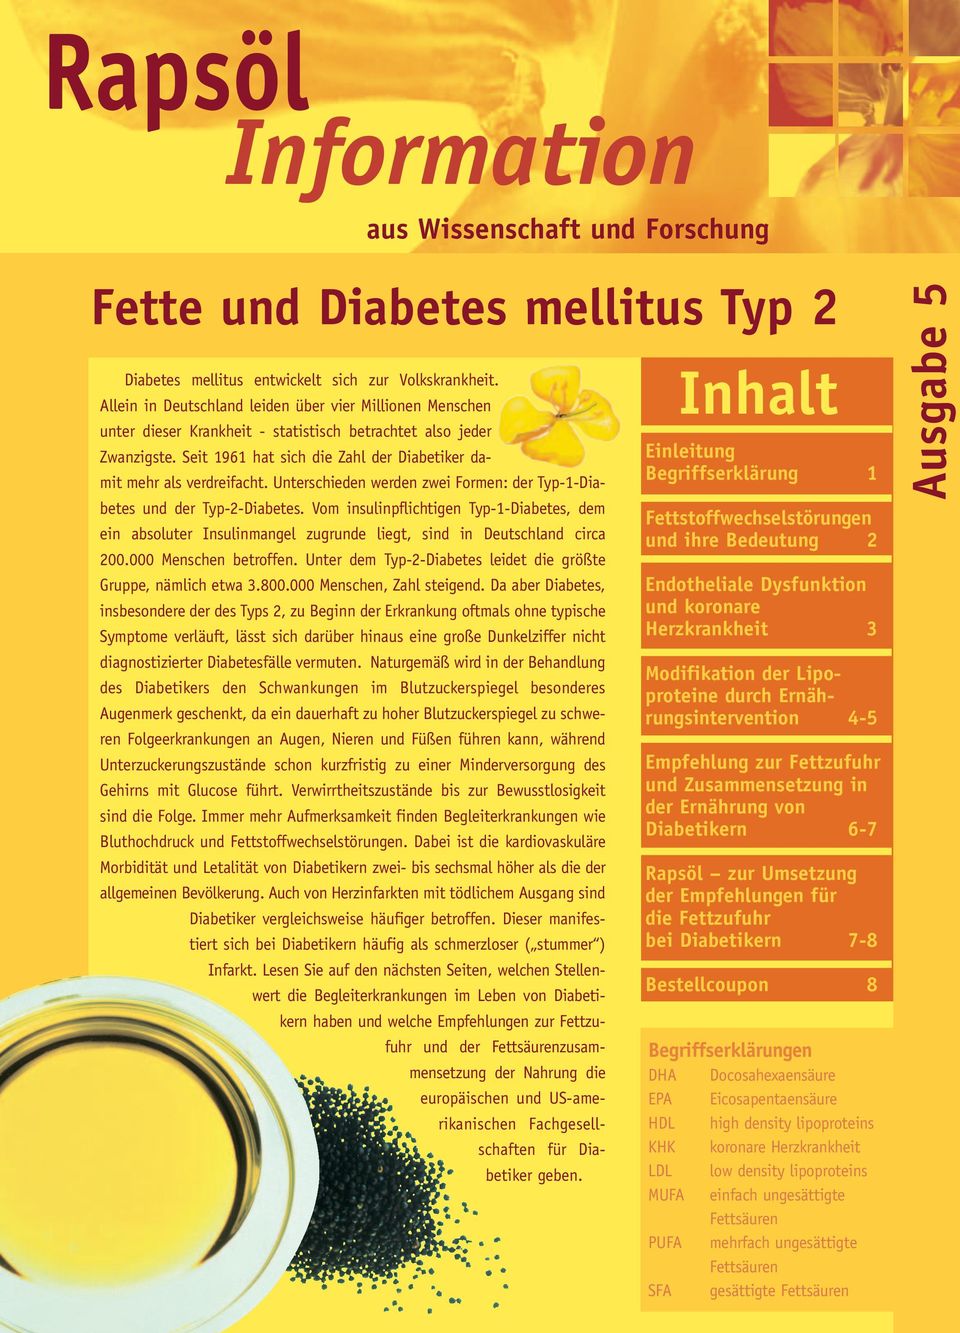 Unterschieden werden zwei Formen: der Typ-1-Diabetes und der Typ-2-Diabetes. Vom insulinpflichtigen Typ-1-Diabetes, dem ein absoluter Insulinmangel zugrunde liegt, sind in Deutschland circa 200.